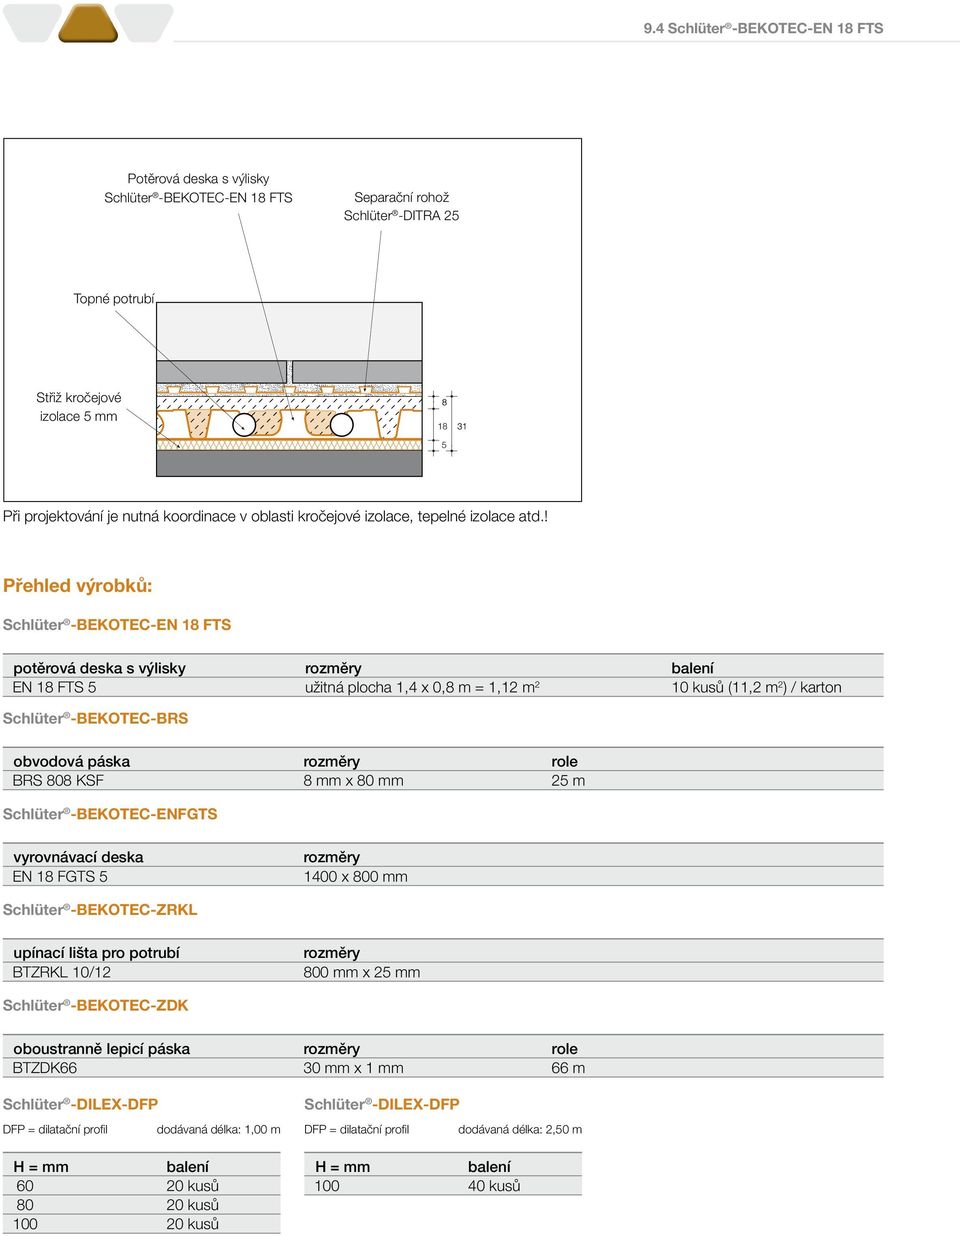 ! Přehled výrobků: Schlüter -BEKOTEC-EN 18 FTS potěrová deska s výlisky rozměry balení EN 18 FTS 5 užitná plocha 1,4 x 0,8 m = 1,12 m 2 10 kusů (11,2 m 2 ) / karton Schlüter -BEKOTEC-BRS obvodová